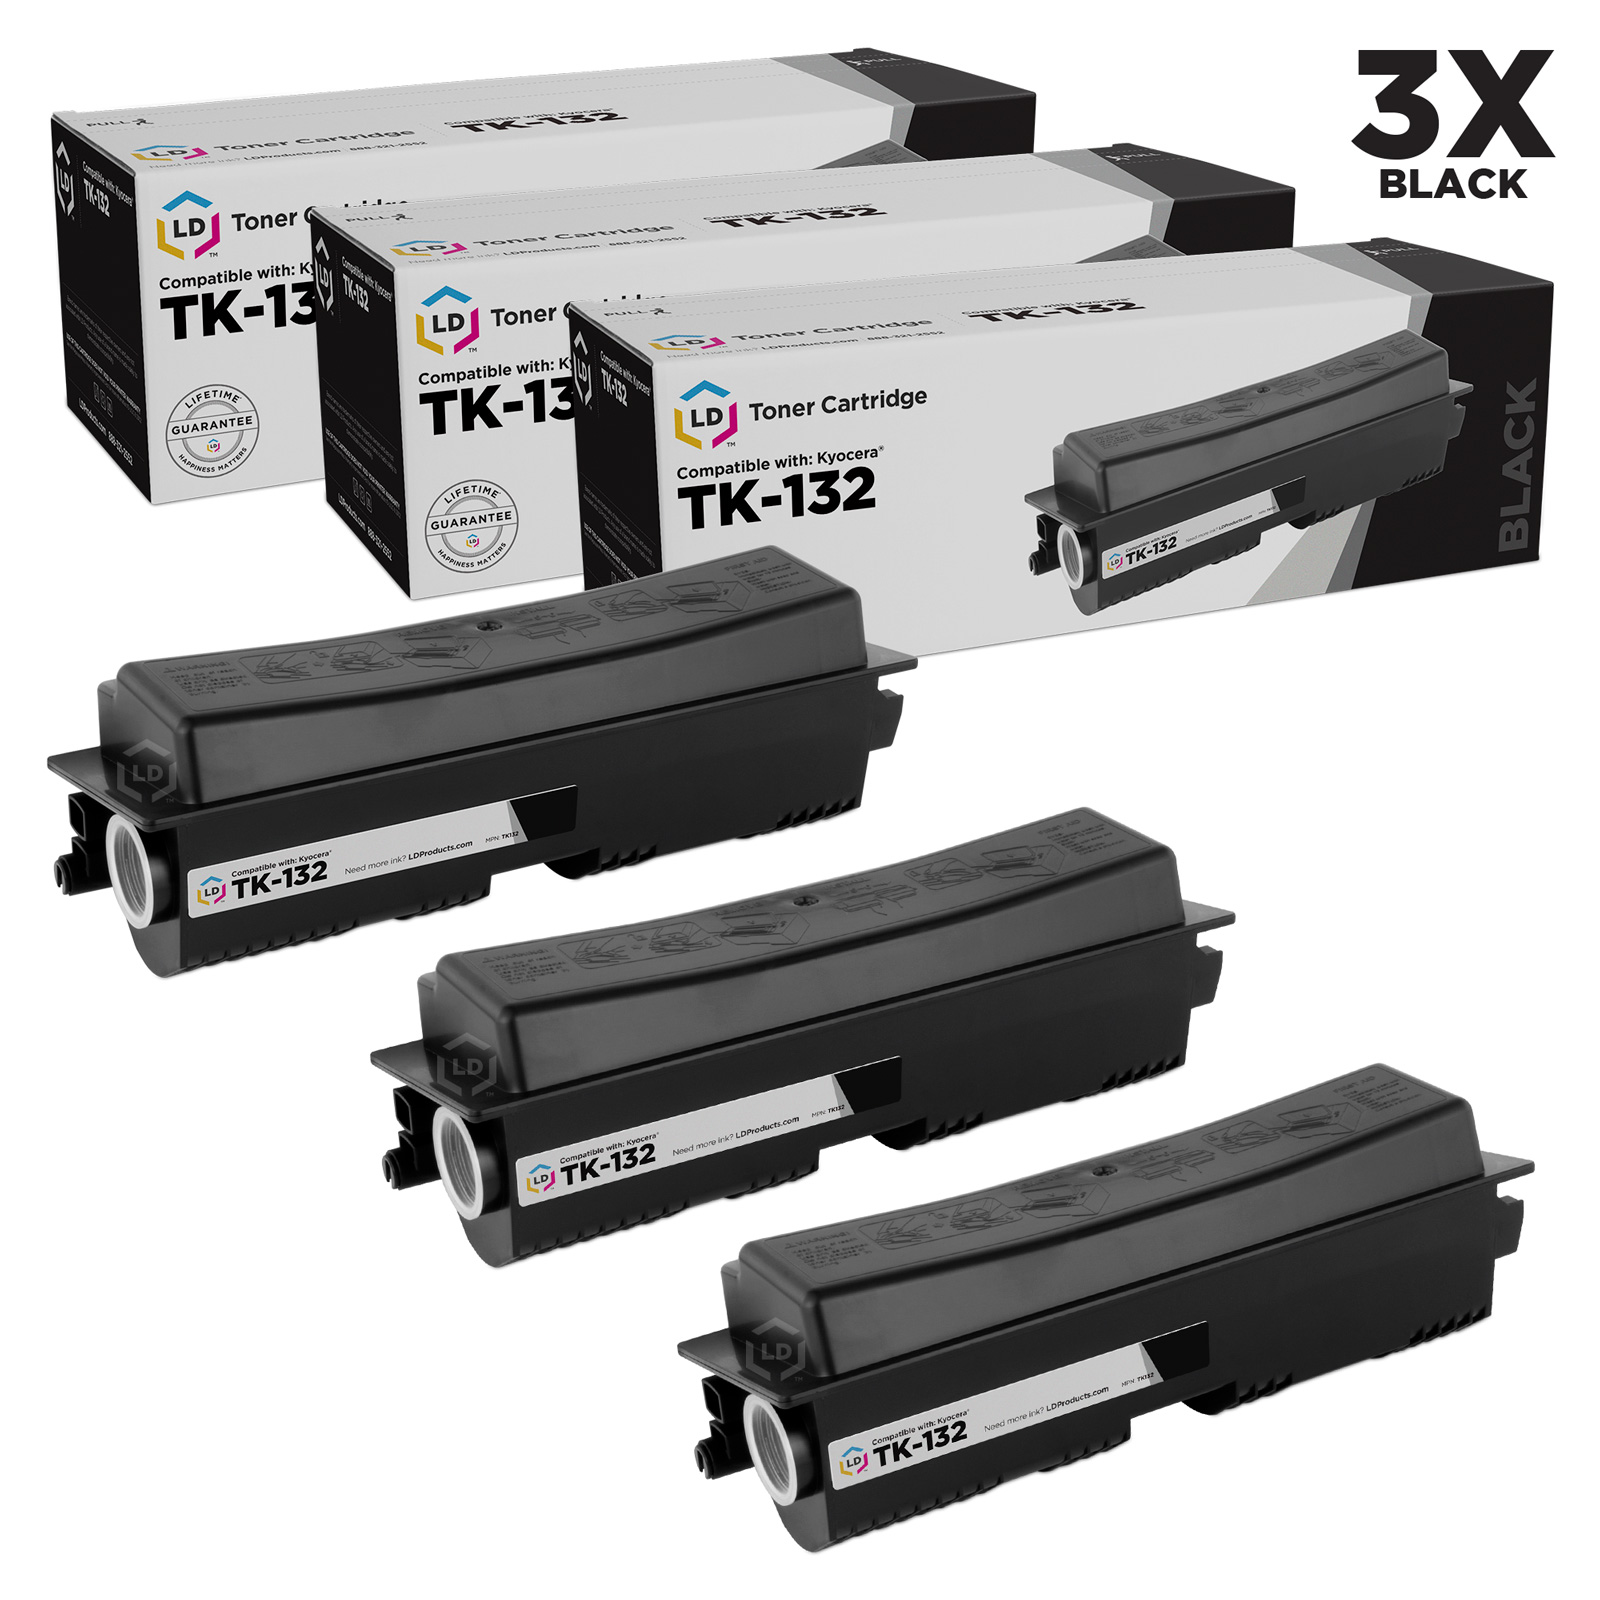 Compatible Kyocera Mita TK-132 Set of 3 Black Laser Toner Cartridges - image 1 of 1